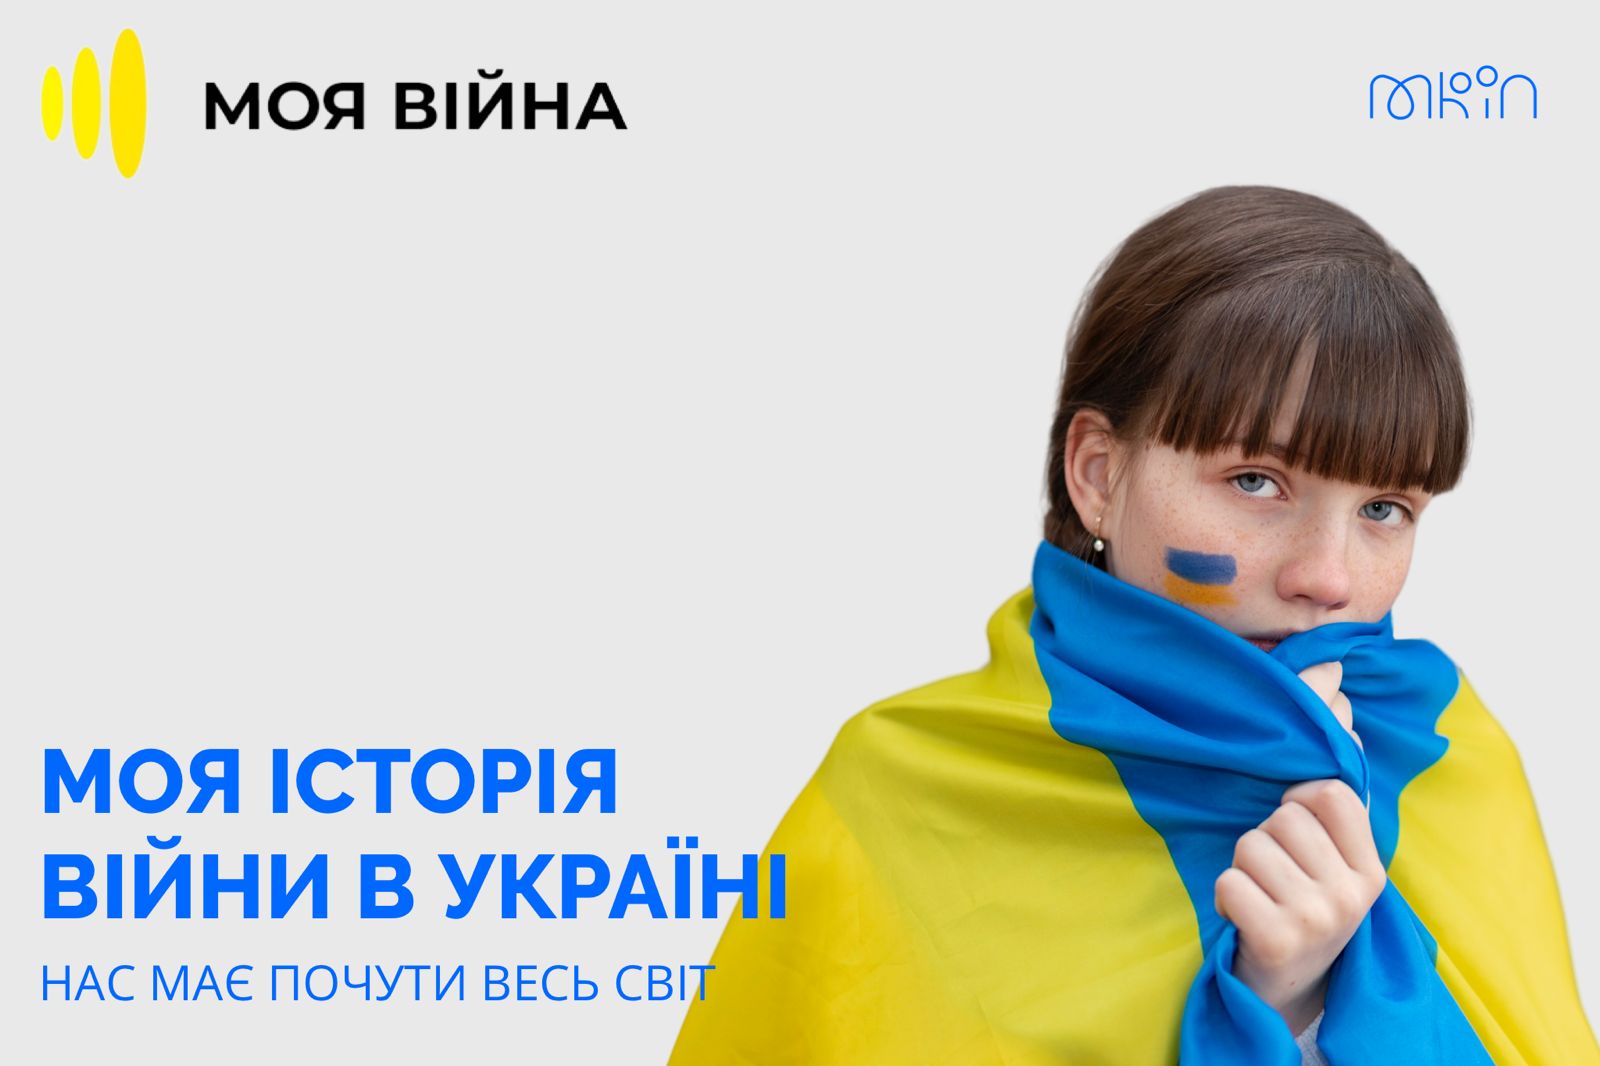 Понад 10 мільйонів людей із 43 країн світу дізнались правду про події в Україні завдяки проєкту «#Моя війна»